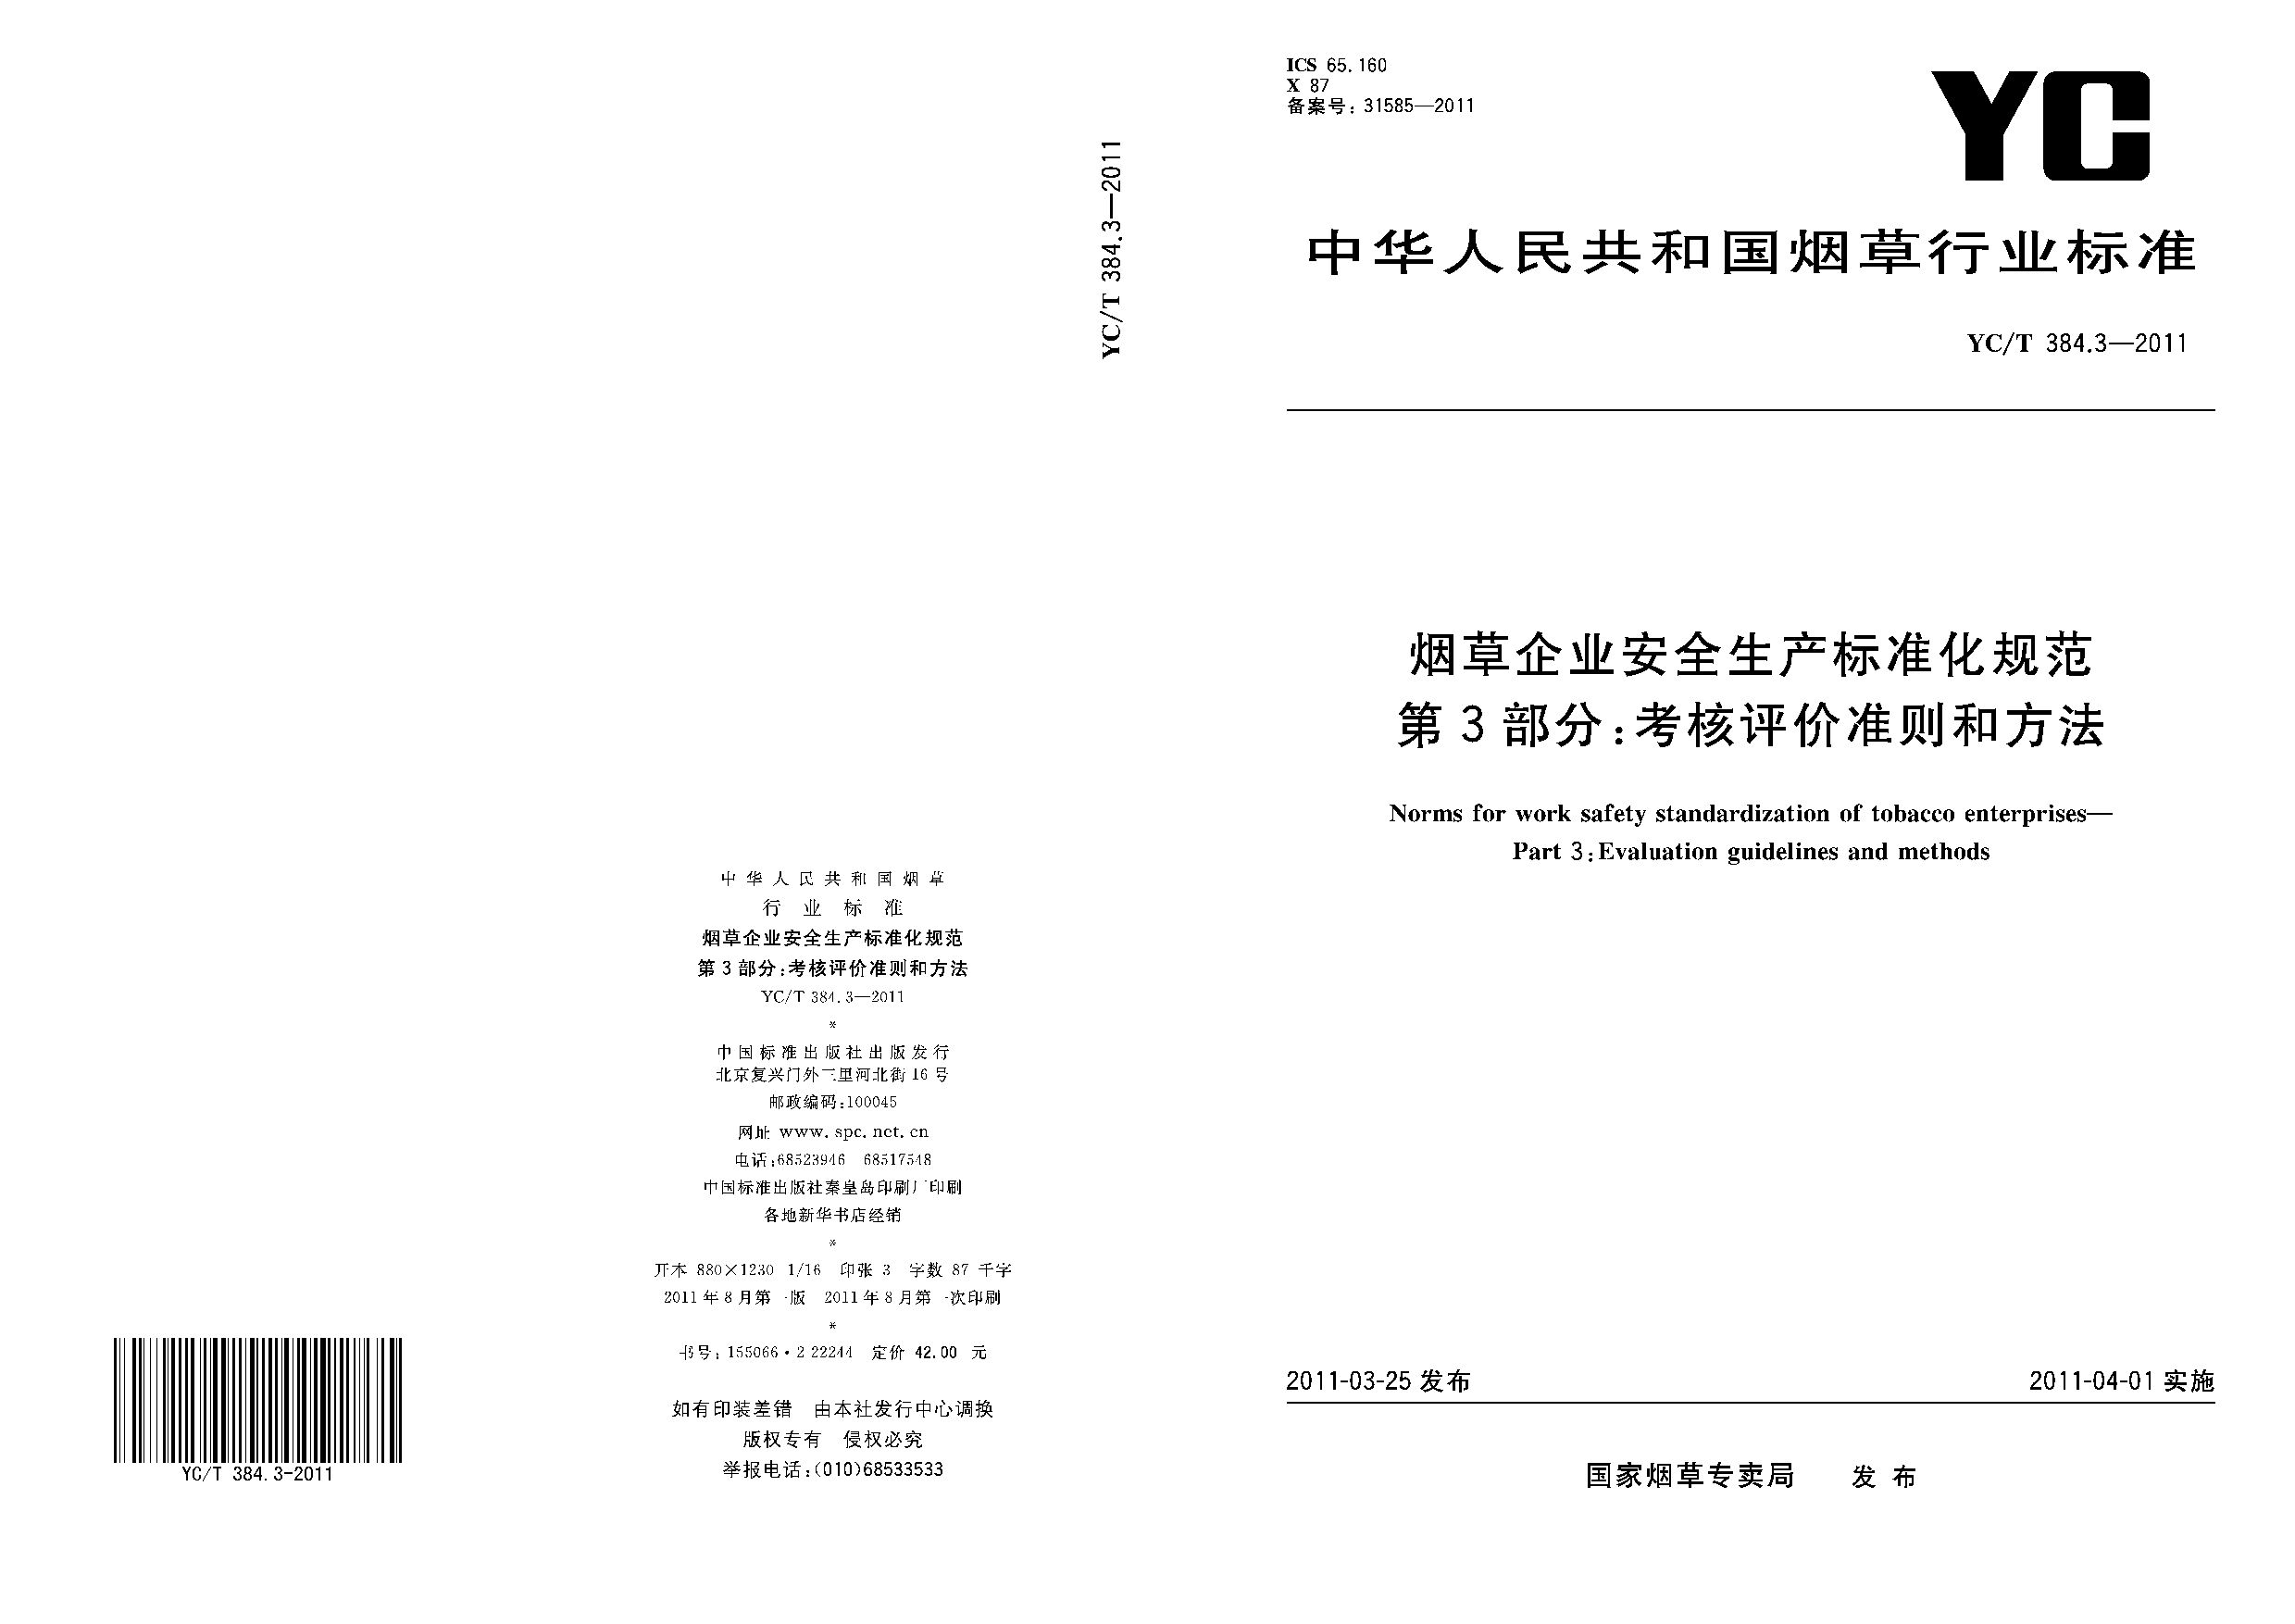 YC/T 384.3-2011